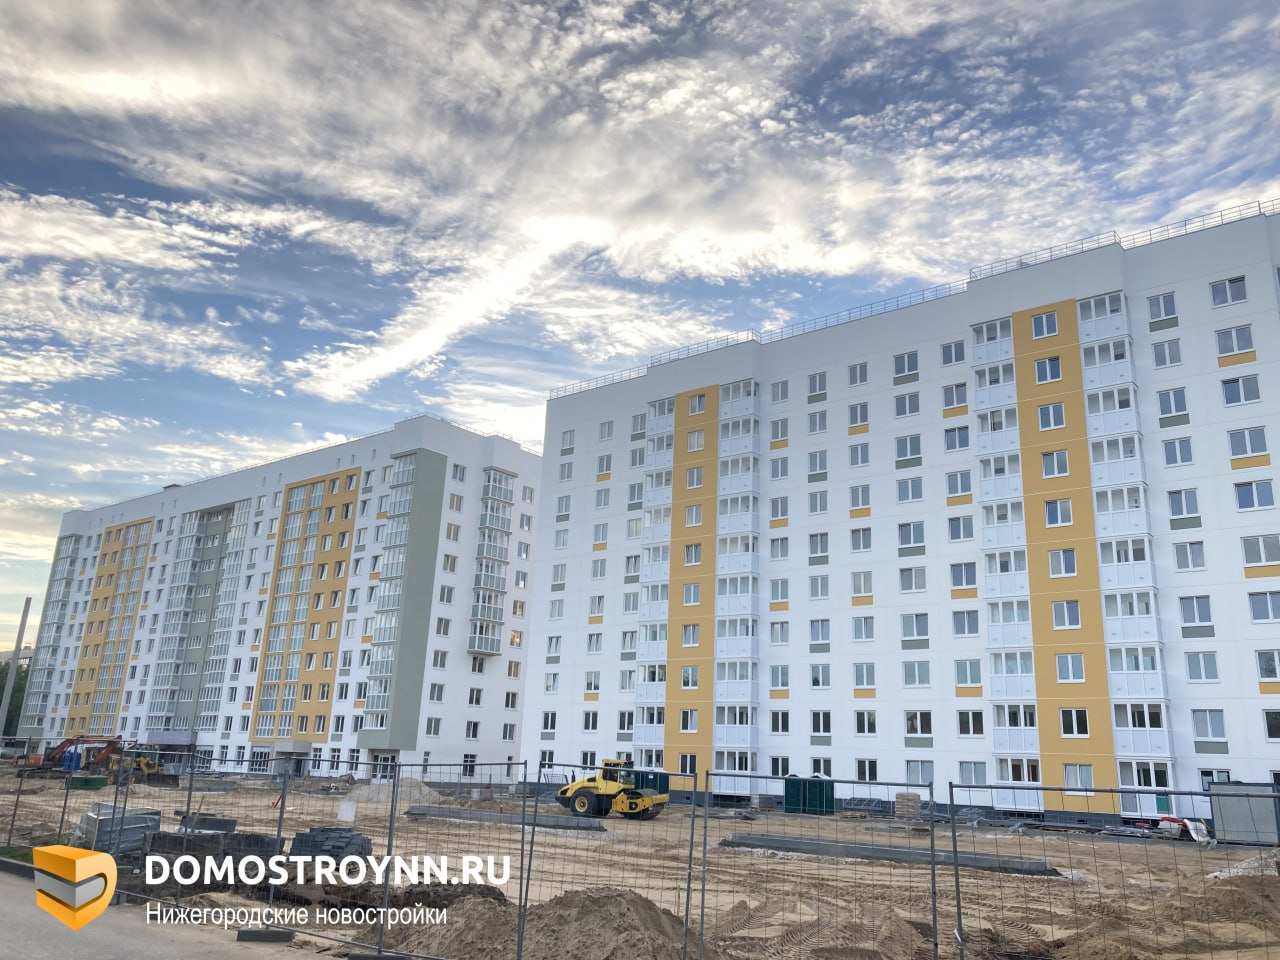 Три дома для расселения ввели в эксплуатацию в Автозаводском районе - фото 1